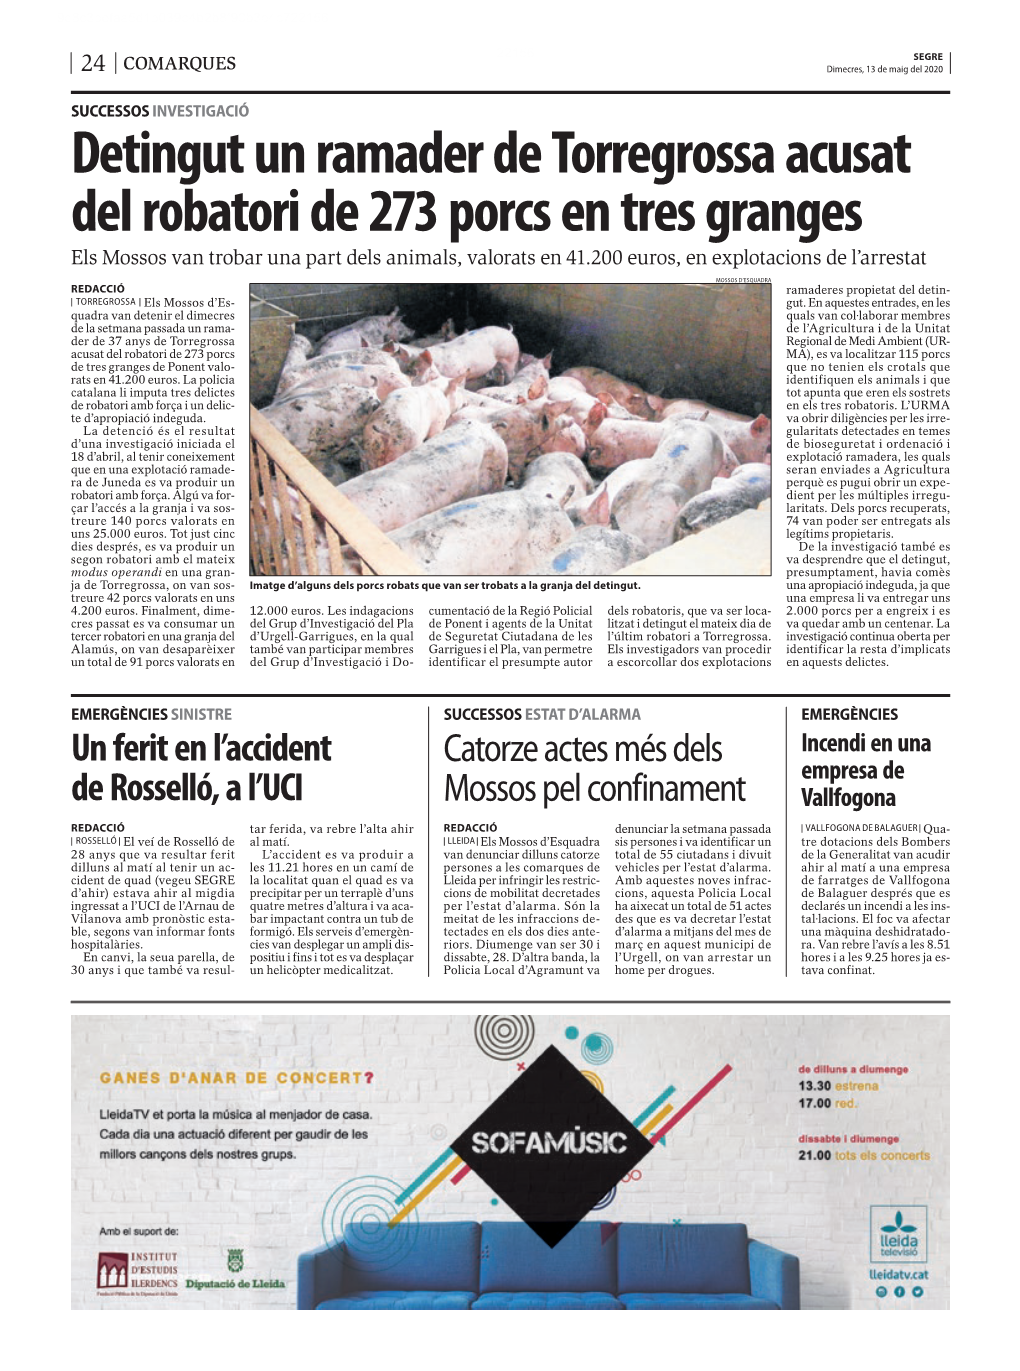 Detingut Un Ramader De Torregrossa Acusat Del Robatori De 273 Porcs En